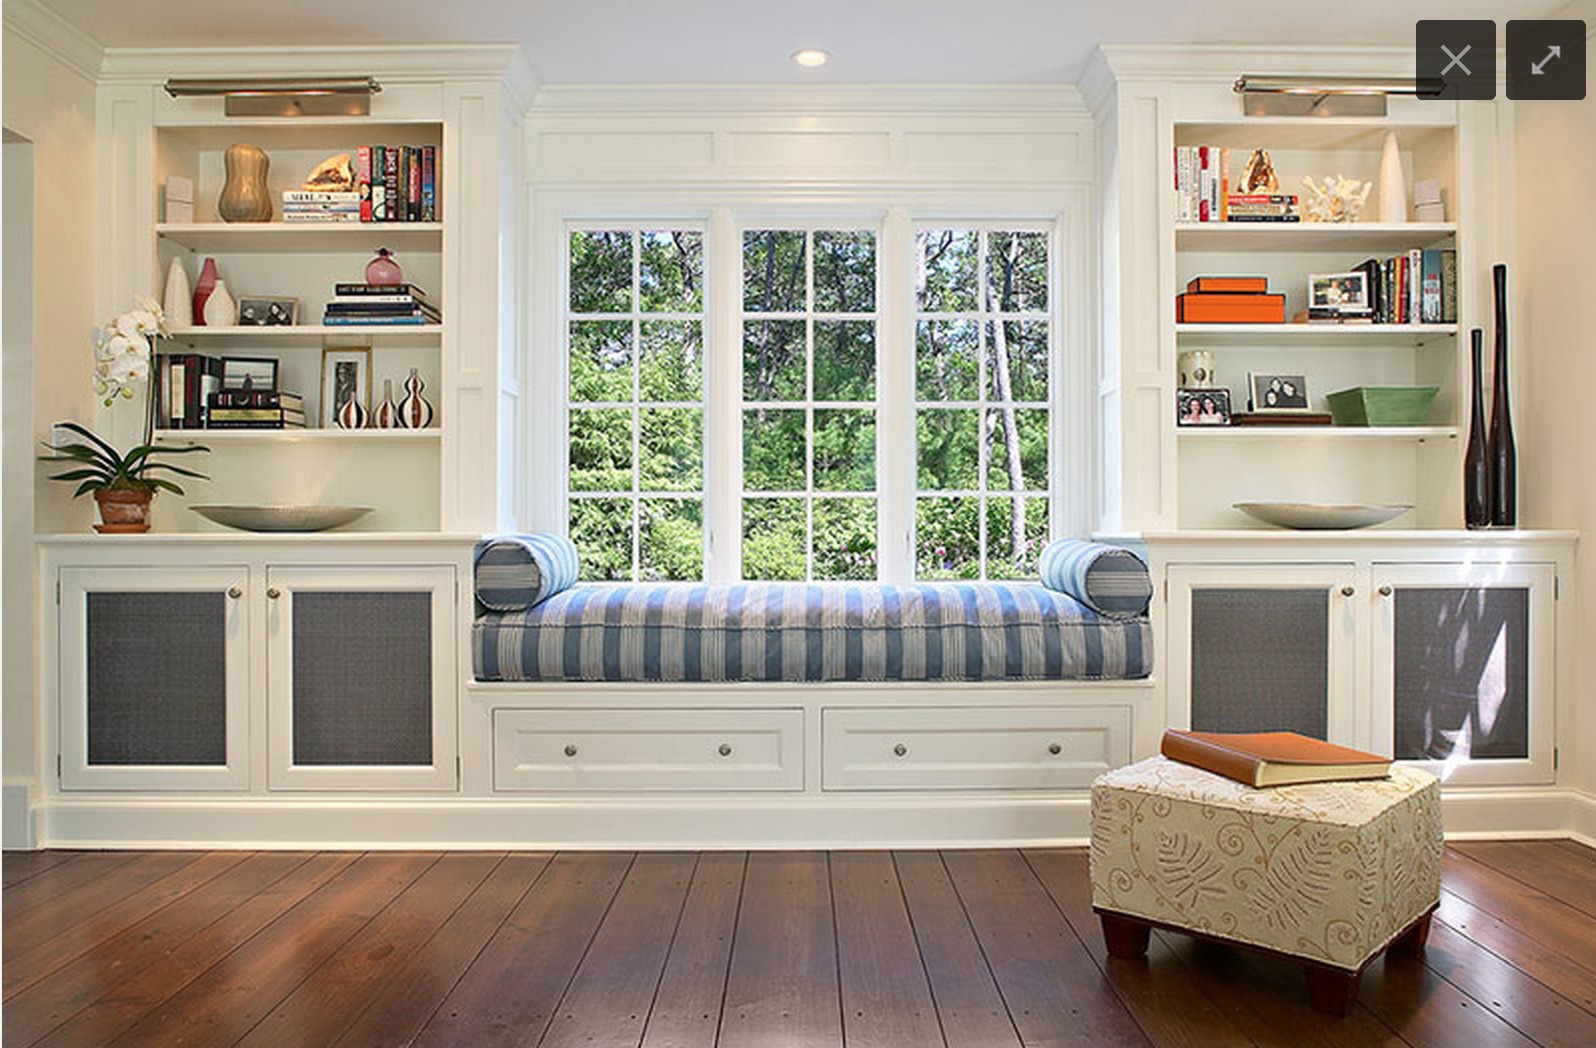 Широкий мягкий подоконник-диван в интерьере: как использовать и украсить, уютный декор на кухне, в спальне - 33 фото